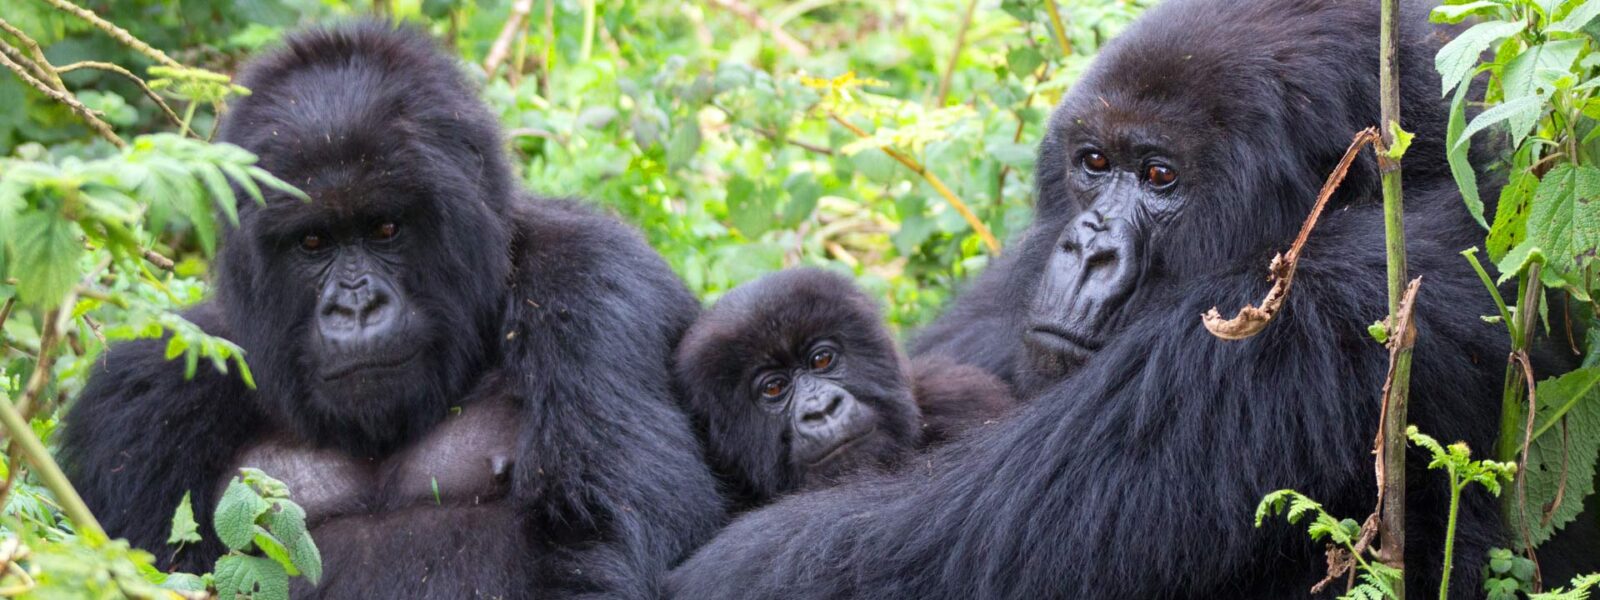 Best place to trek gorillas in Africa